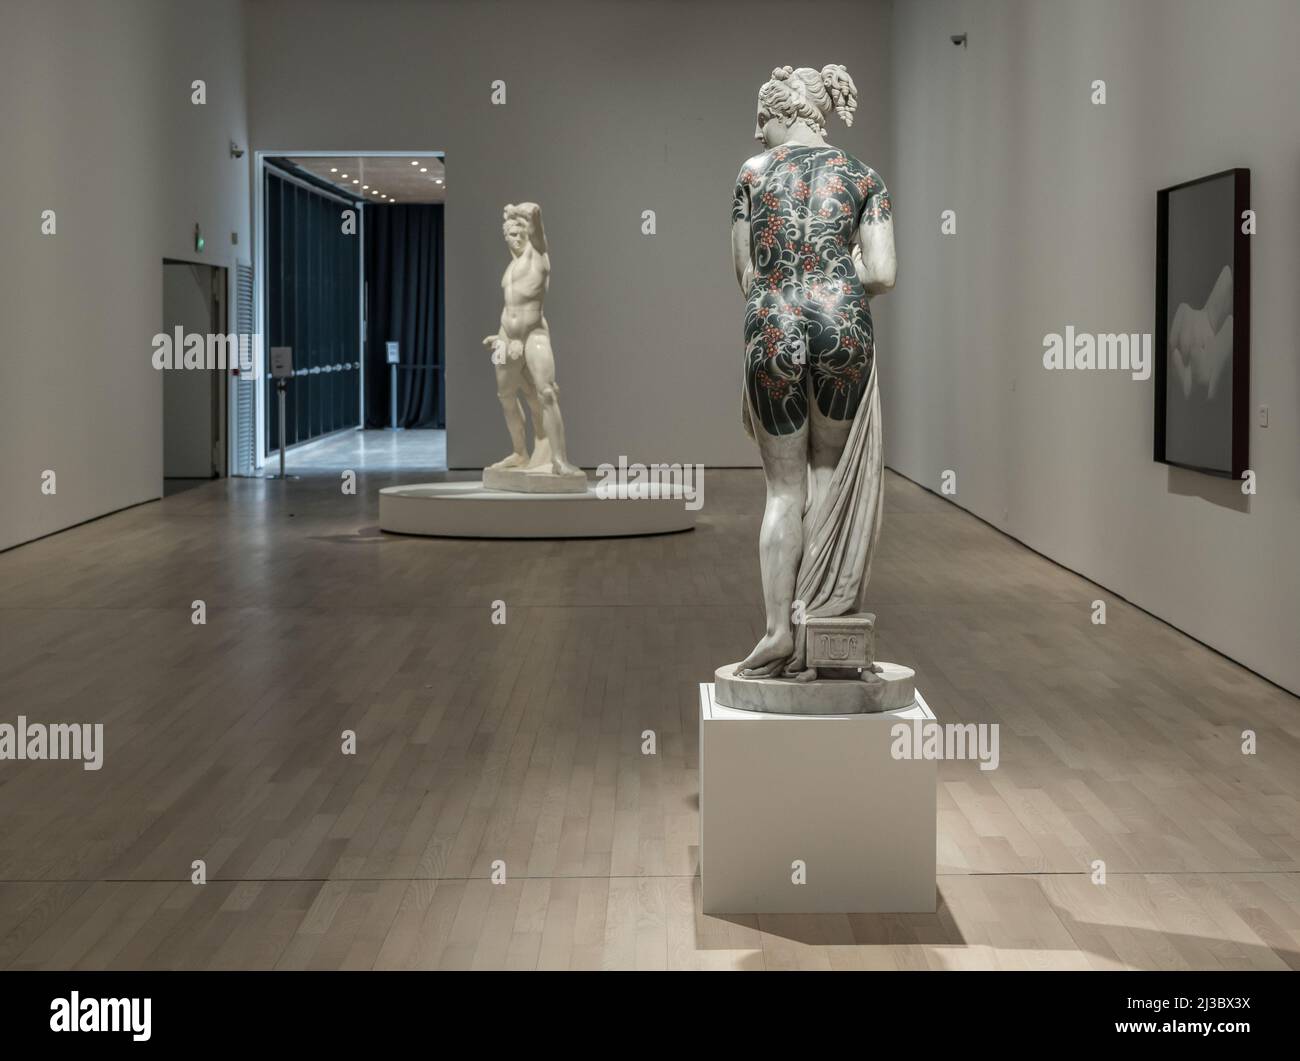 Scultura marmorea - Venere Italica - di Fabio Viale scultore esposto nelle sale del Museo di Arte Contemporanea - Rovereto, Italia Foto Stock